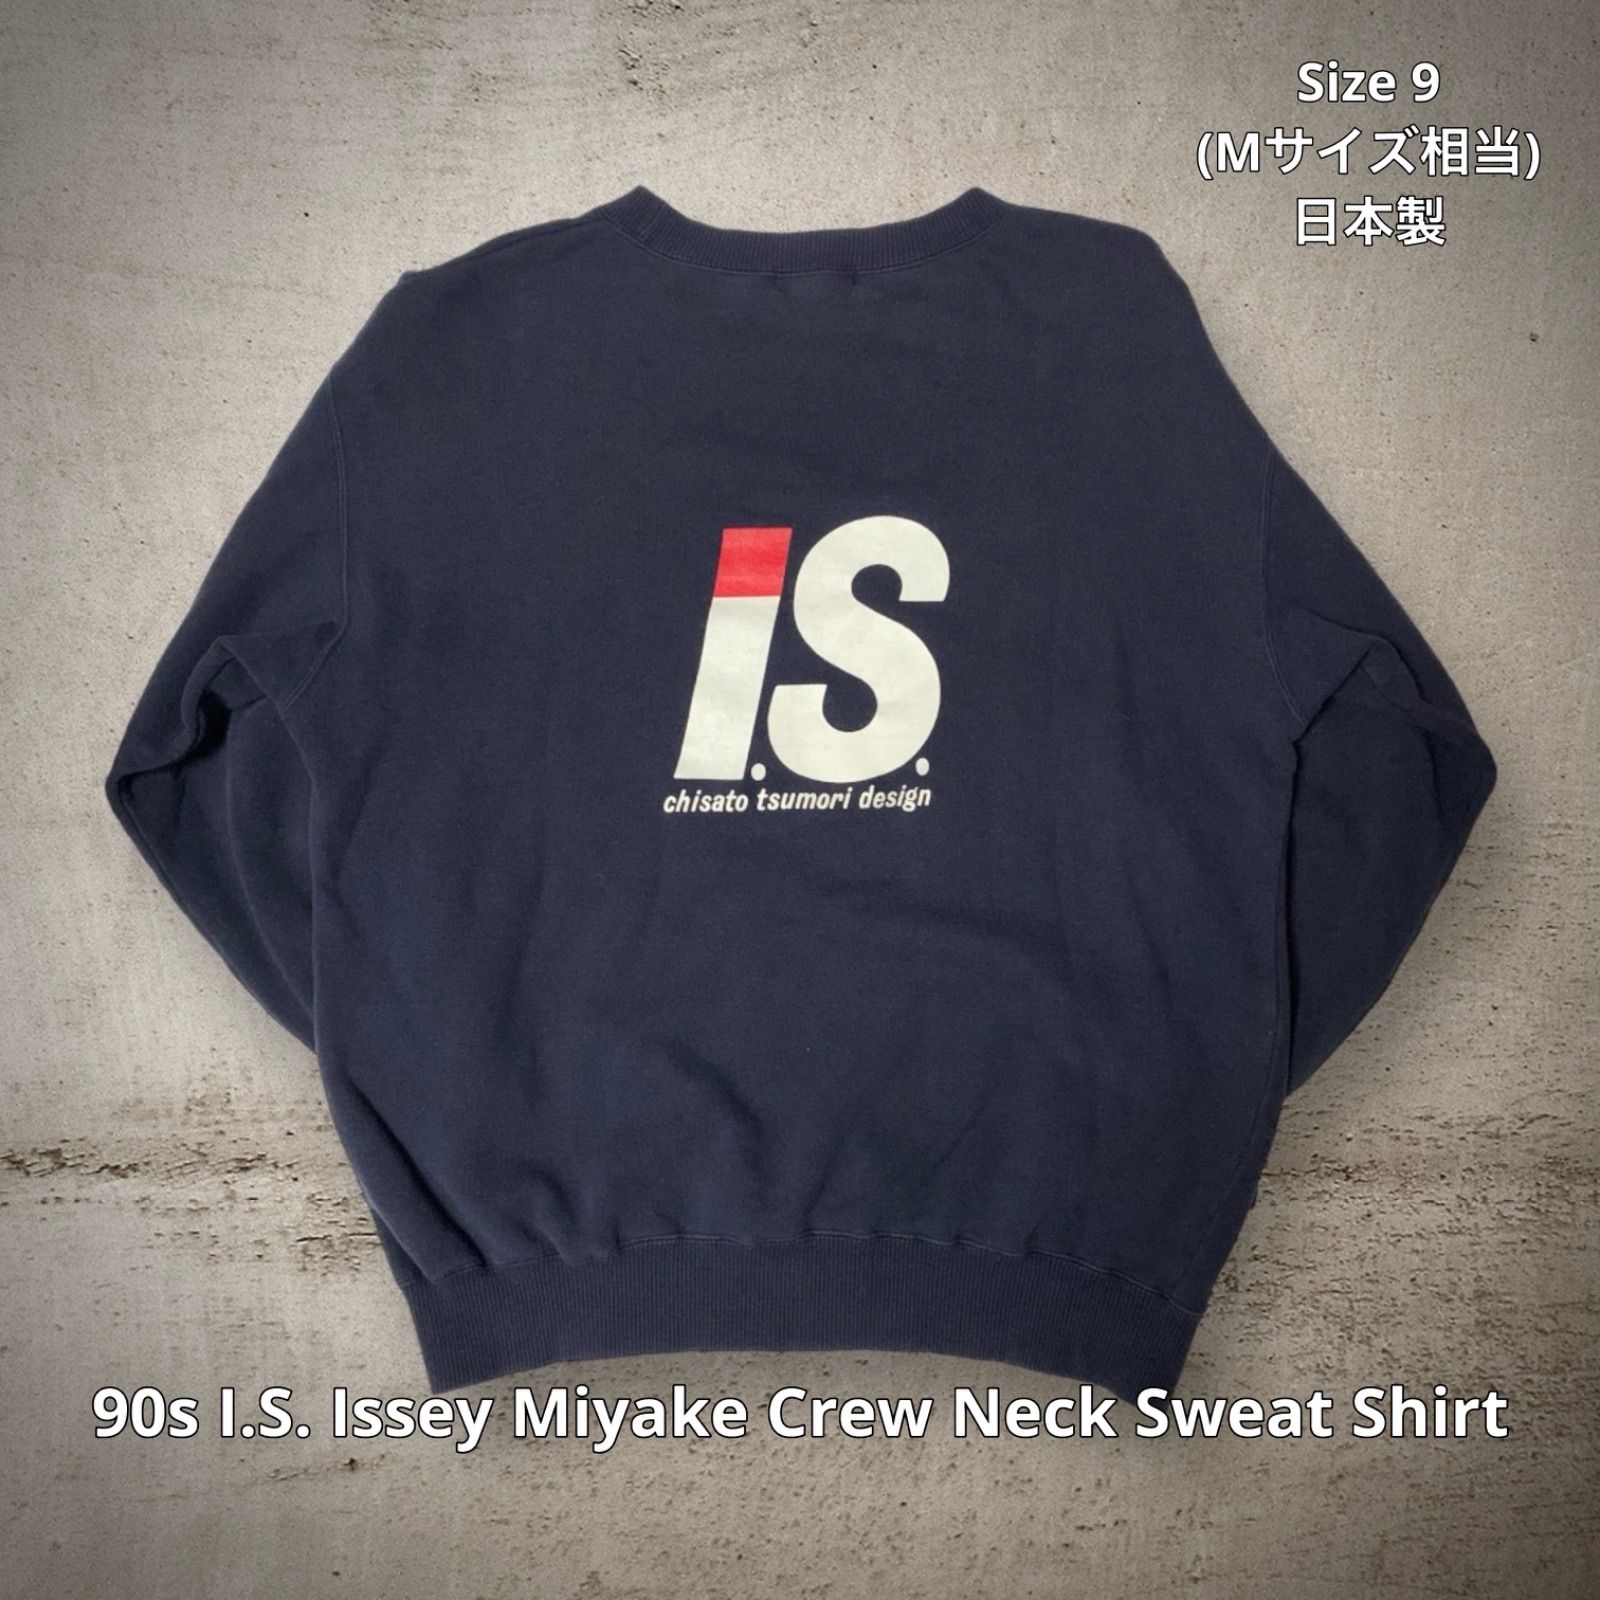 90s I.S. Issey Miyake Crew Neck Sweat Shirt イッセイスポーツ